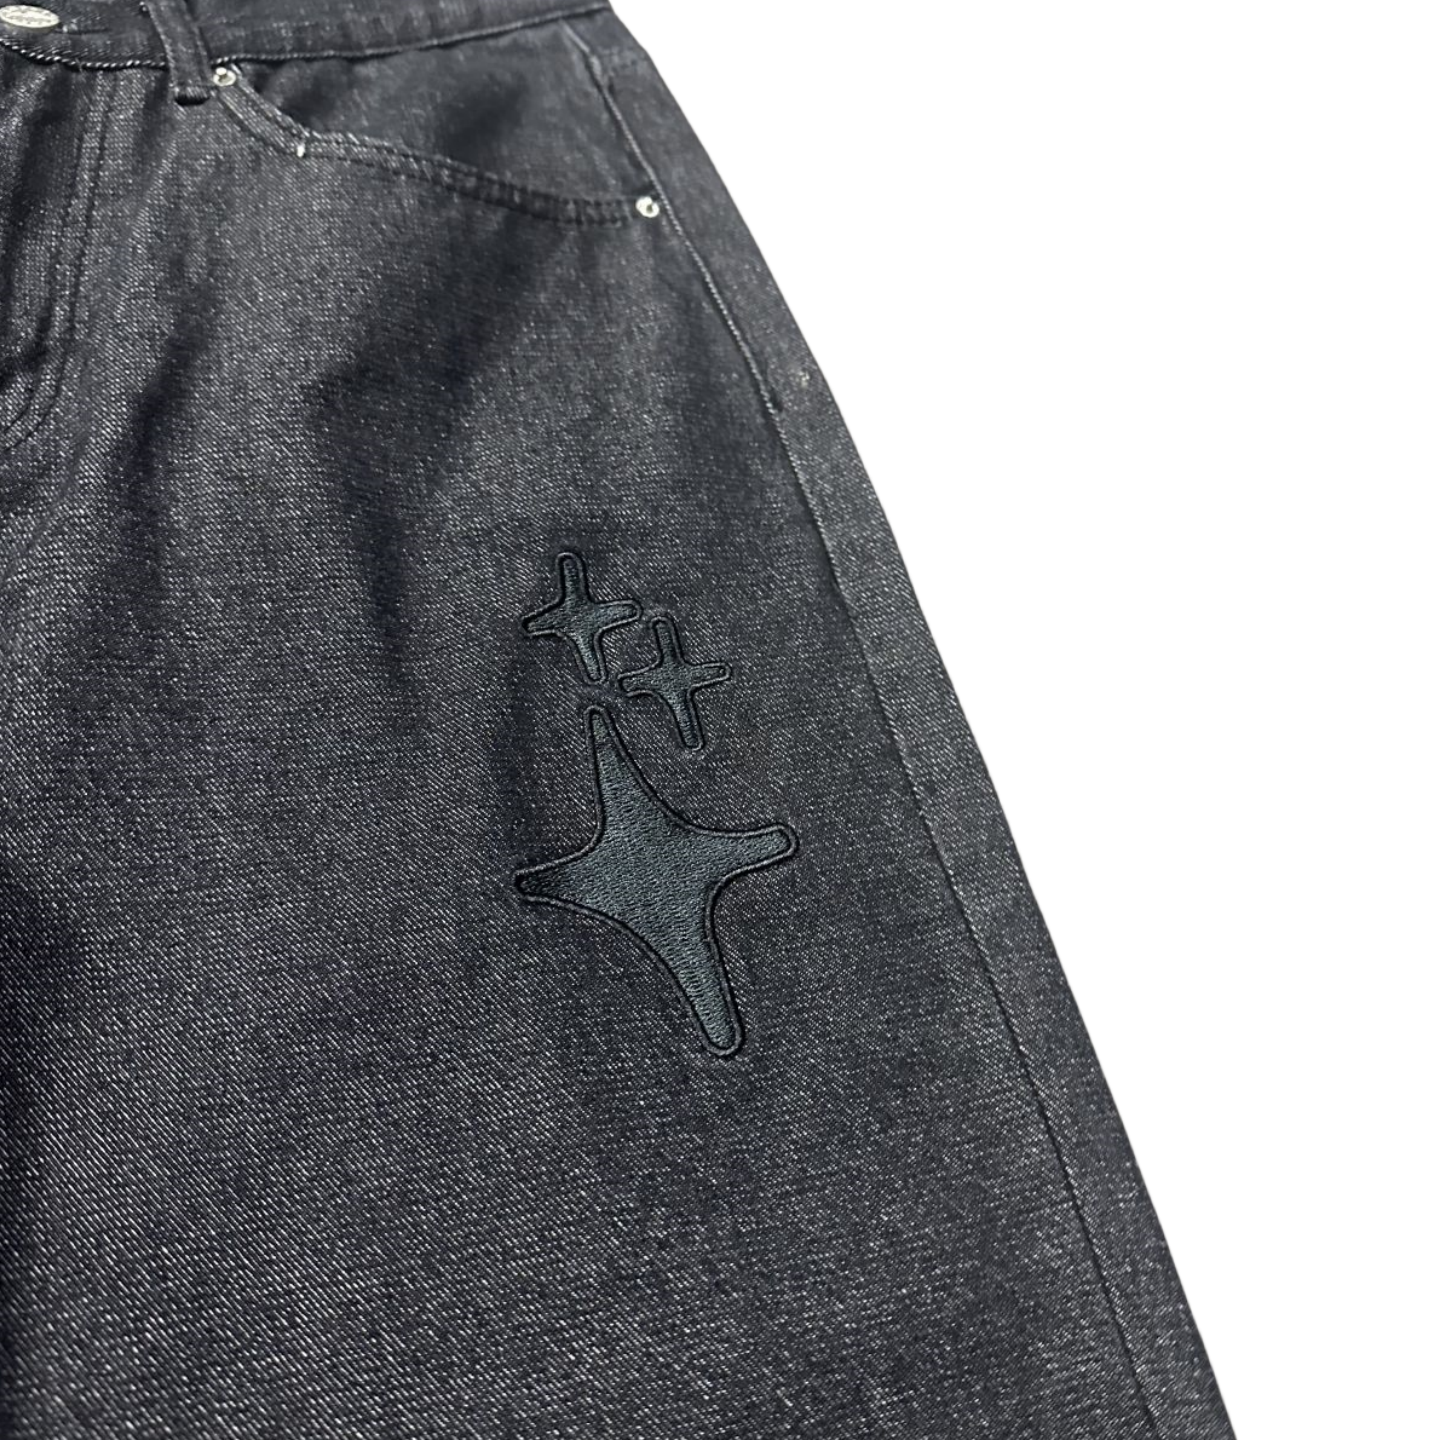 Broken Planet Jeans pour Hommes et Femmes Pantalons imprimés étoiles Streetwear Pantalons Droits Larges décontractés - Denim foncé